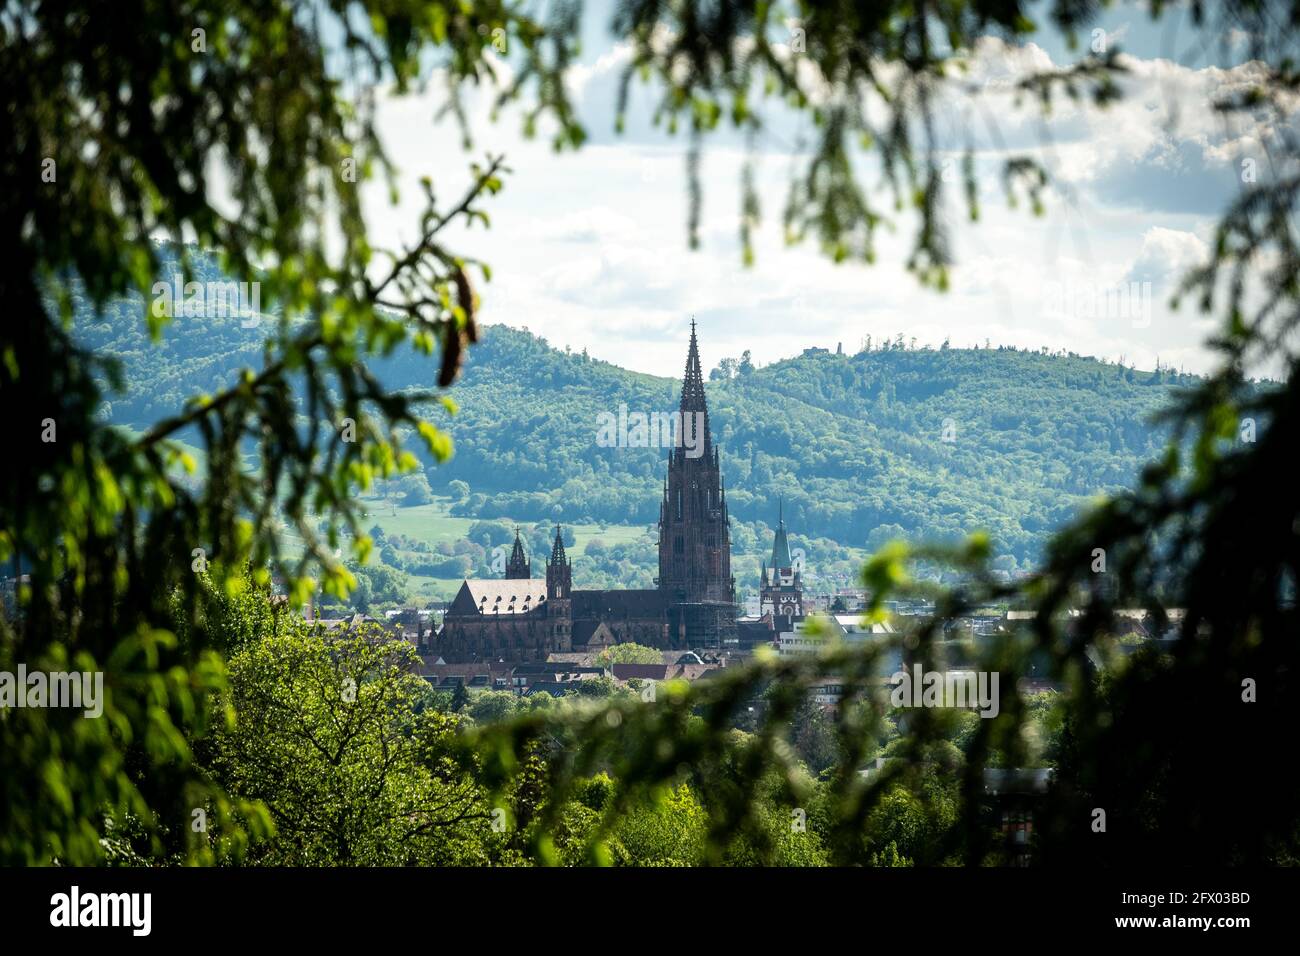 View towards Minster of Freiburg Stock Photo